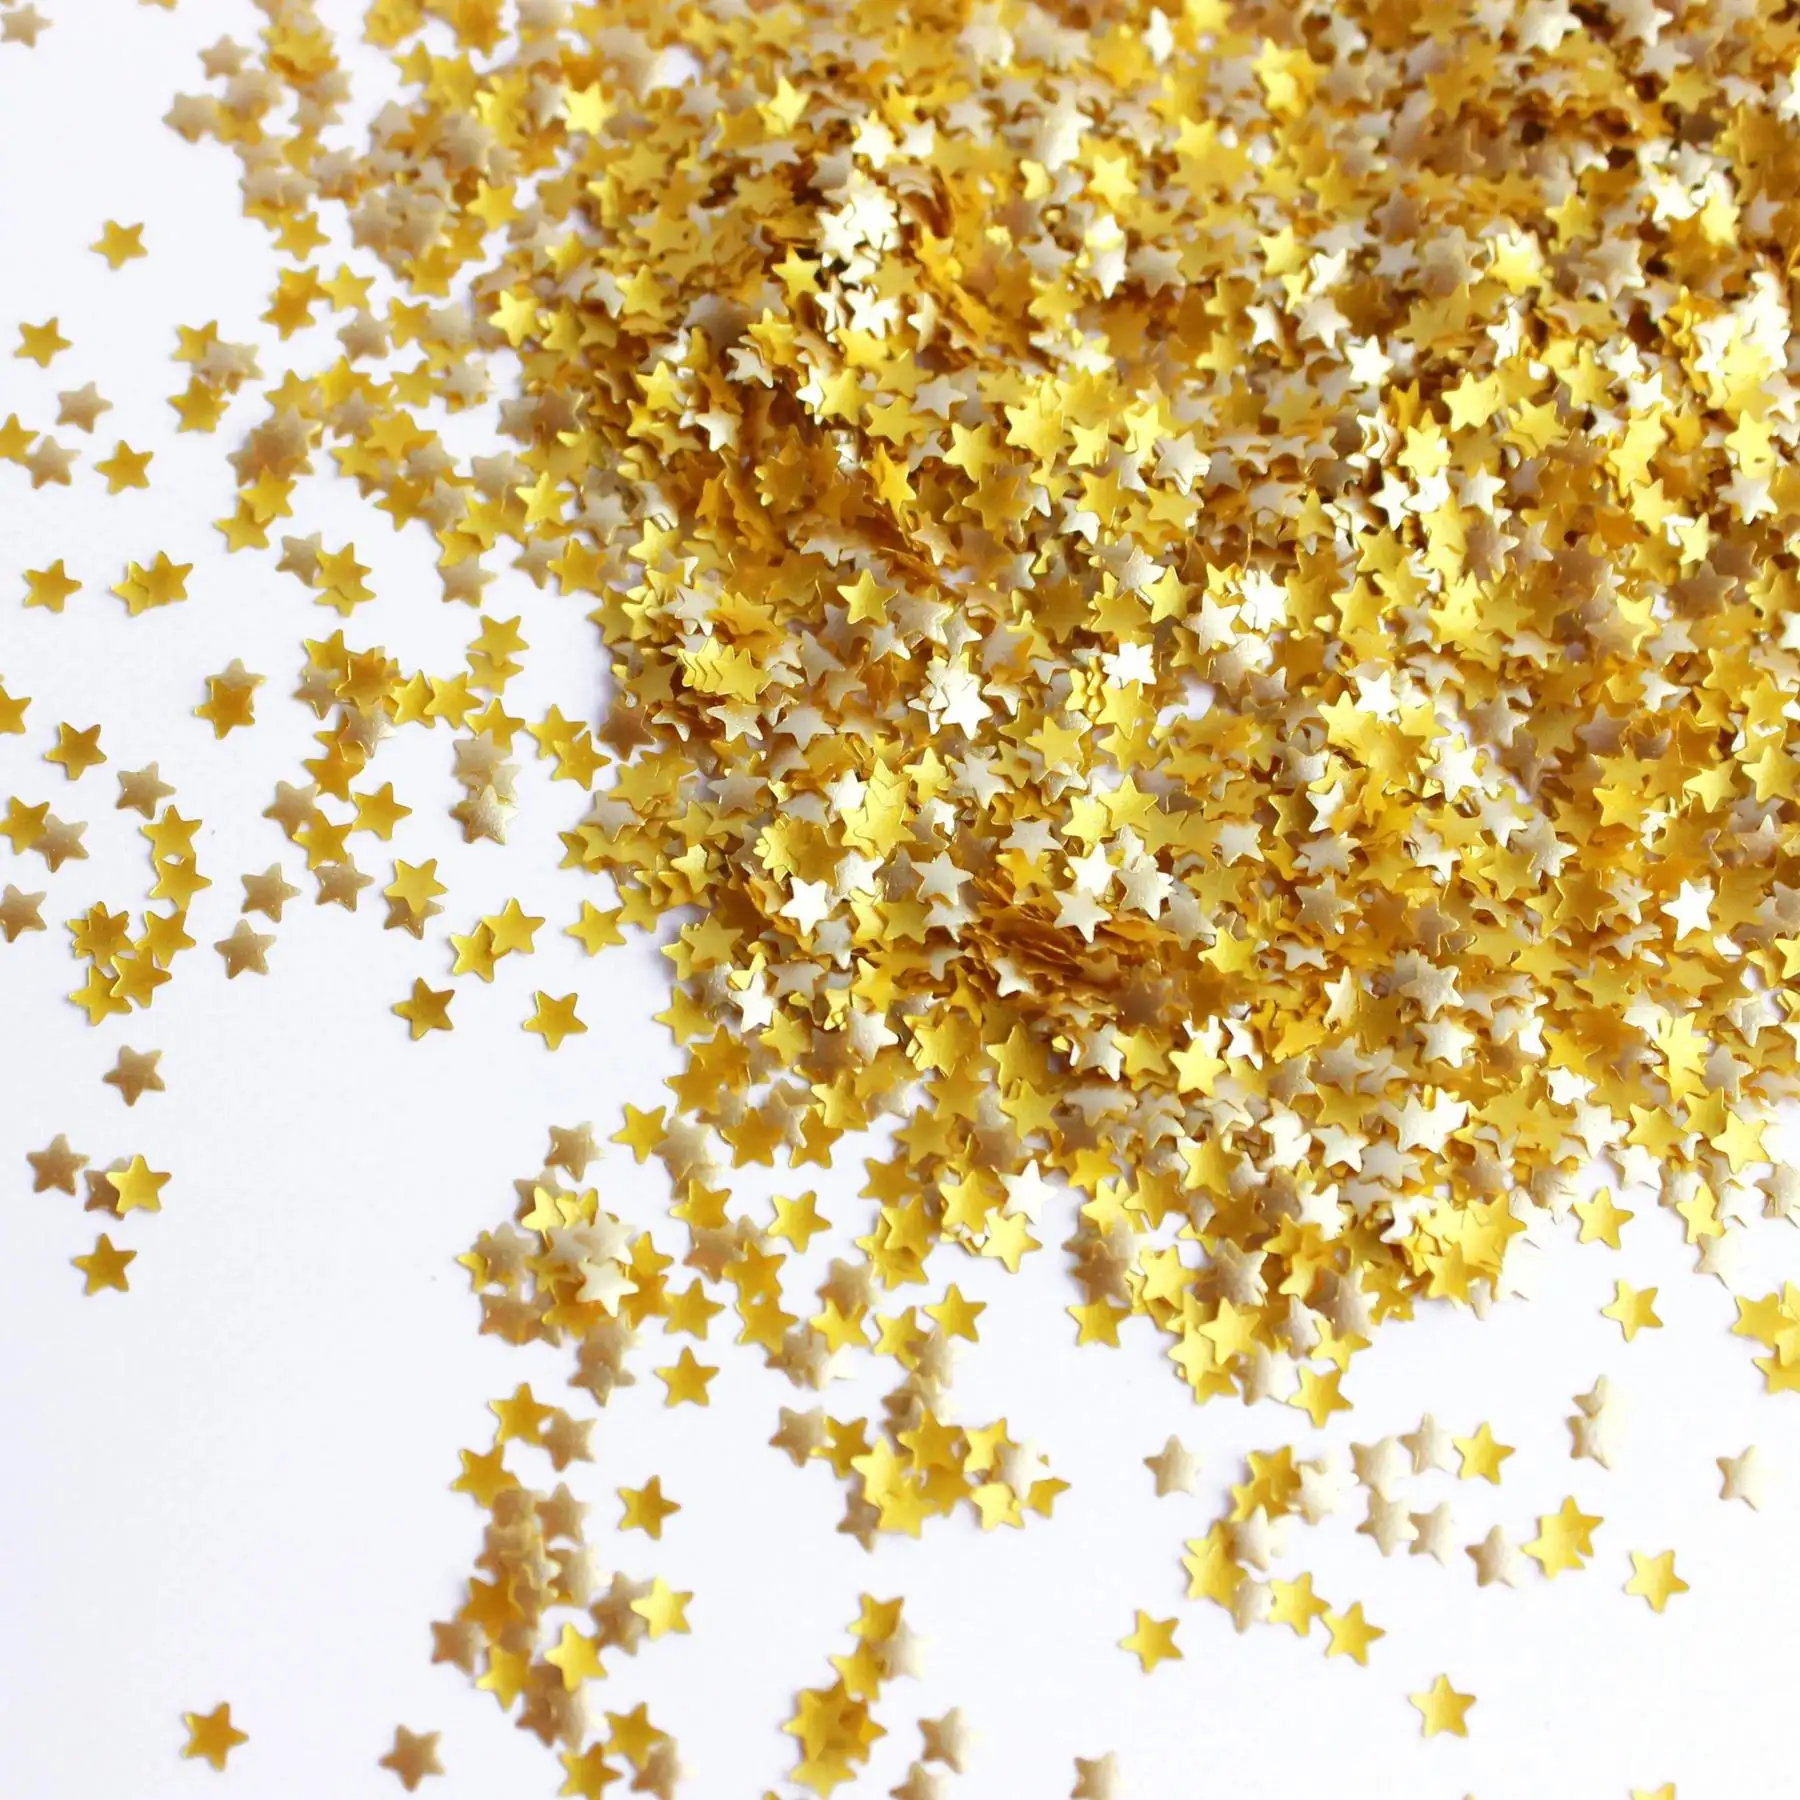 Aspersores de estrellas de purpurina dorada comestible para decoración de pasteles